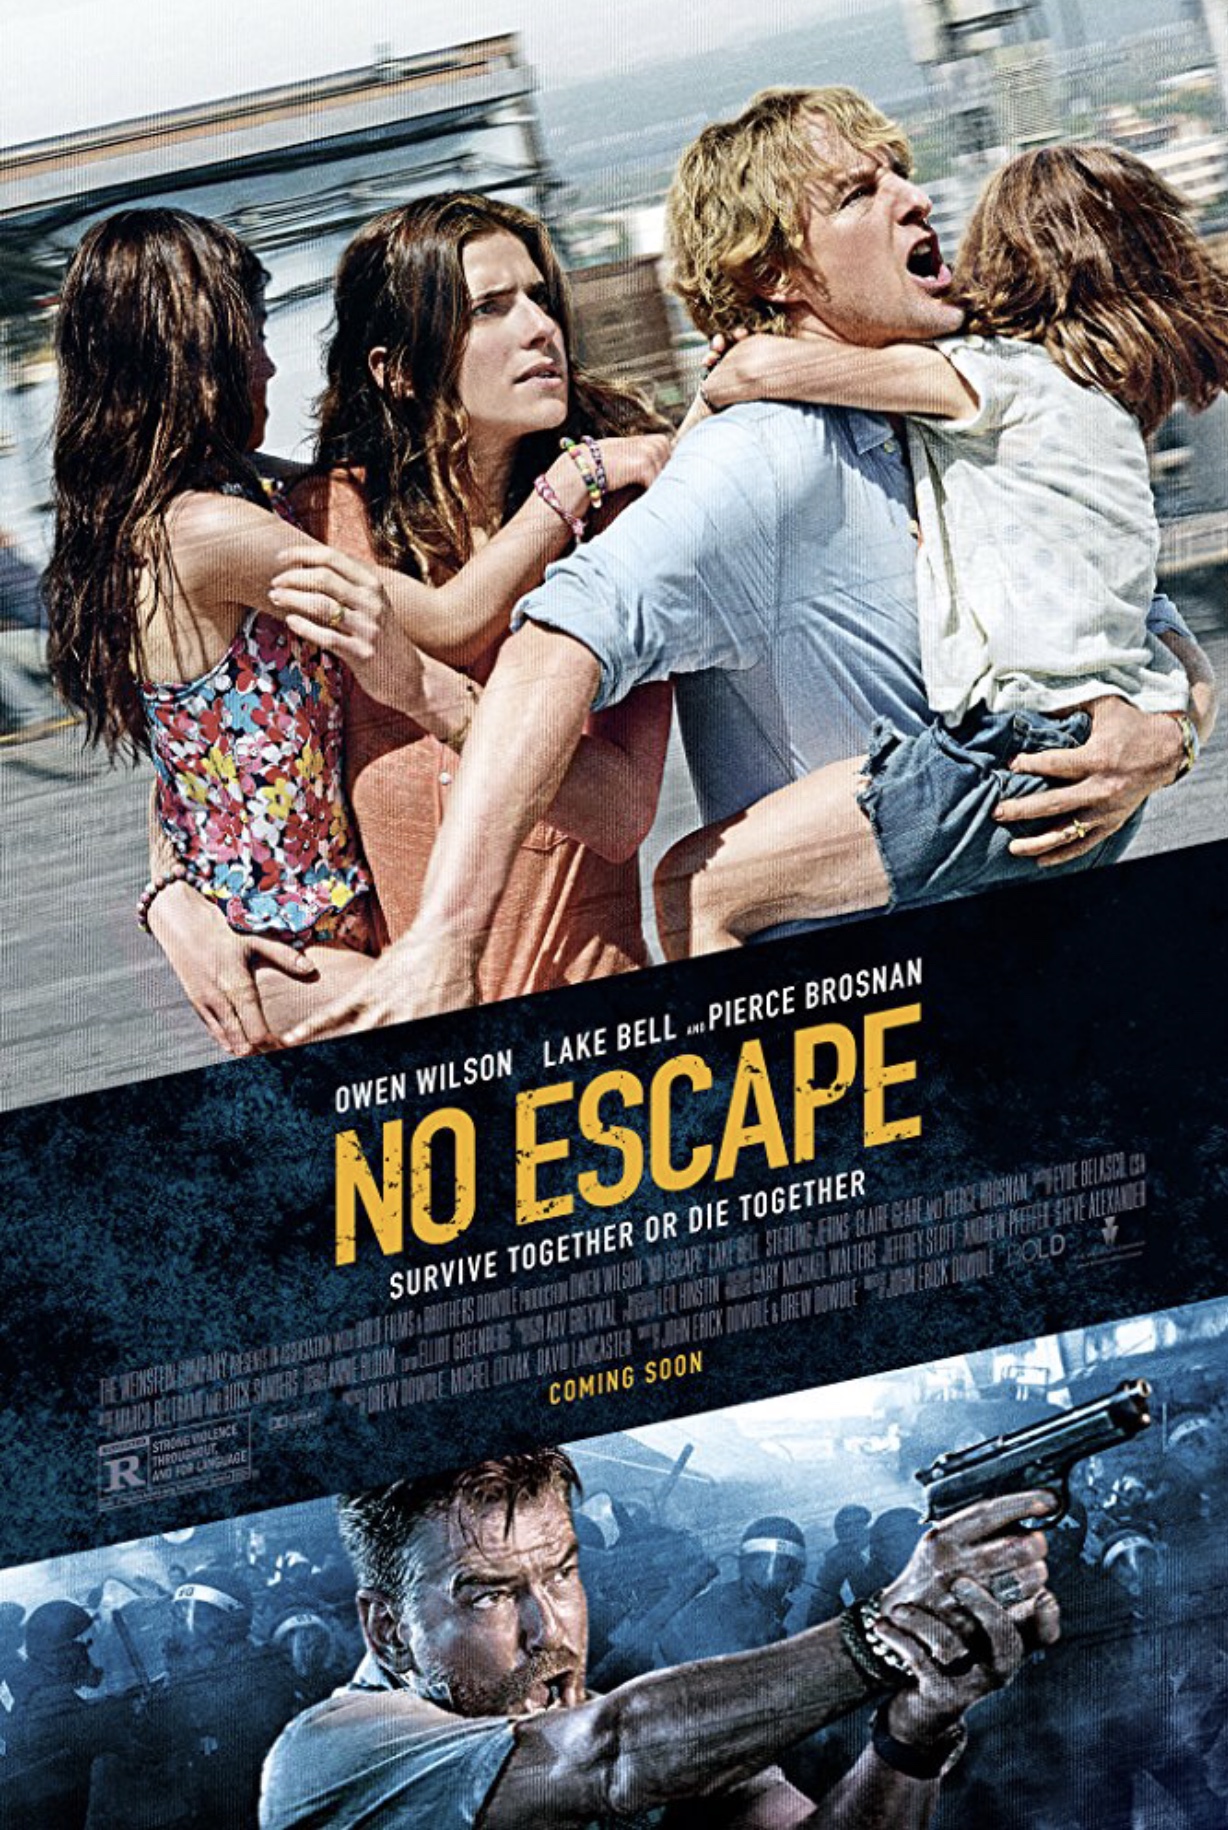 no escape room movie